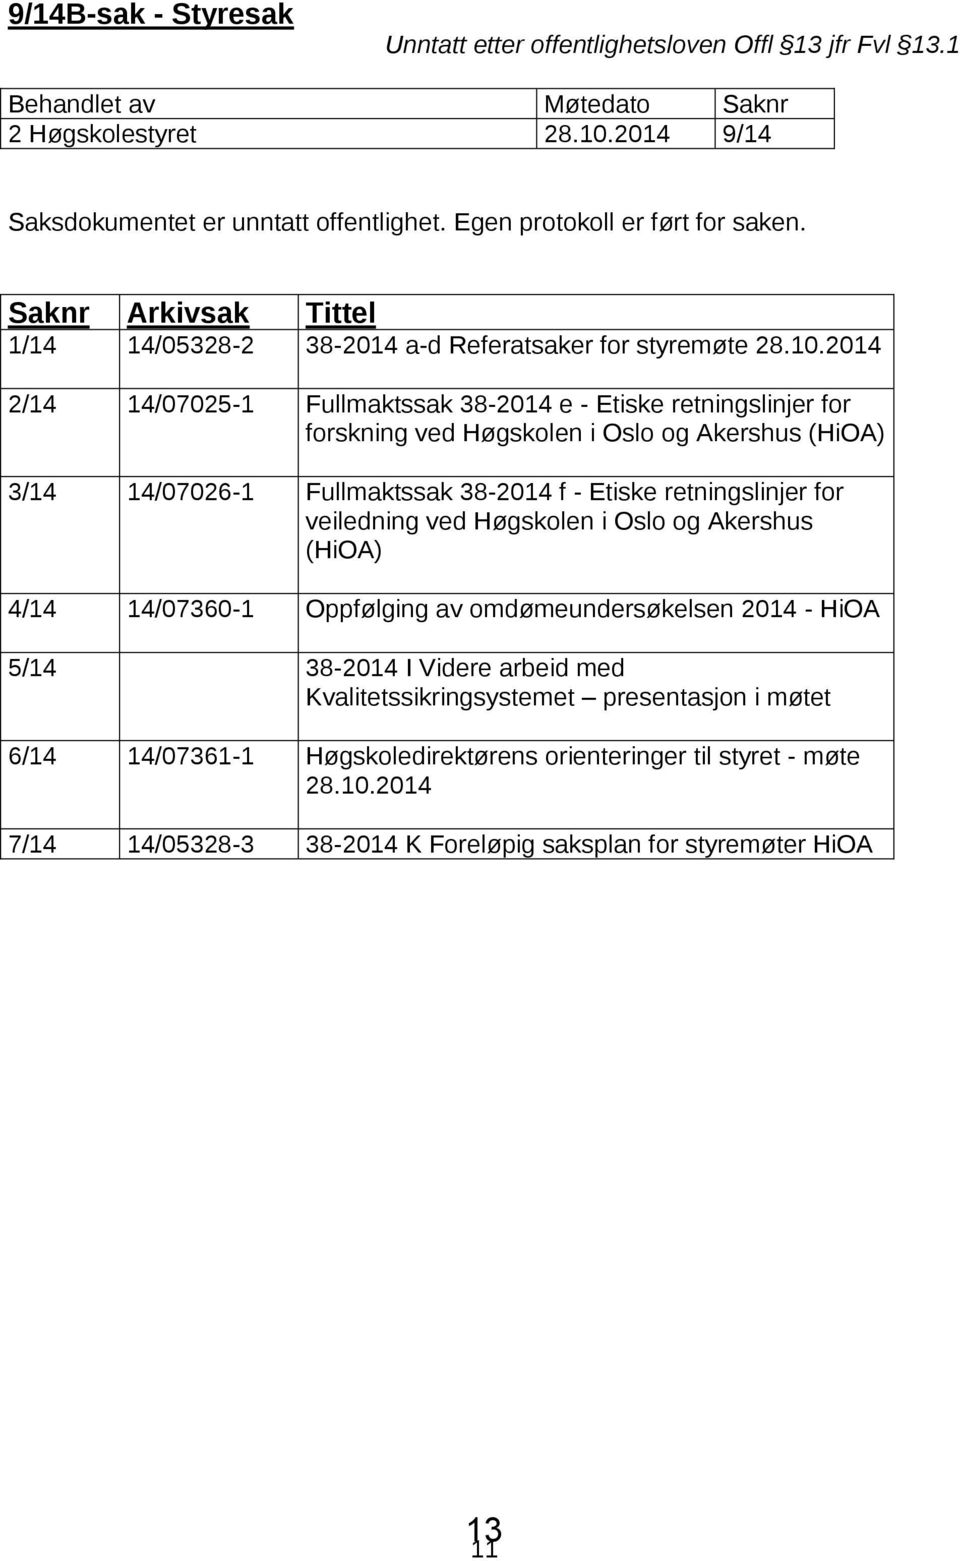 2014 2/14 14/07025-1 Fullmaktssak 38-2014 e - Etiske retningslinjer for forskning ved Høgskolen i Oslo og Akershus (HiOA) 3/14 14/07026-1 Fullmaktssak 38-2014 f - Etiske retningslinjer for veiledning